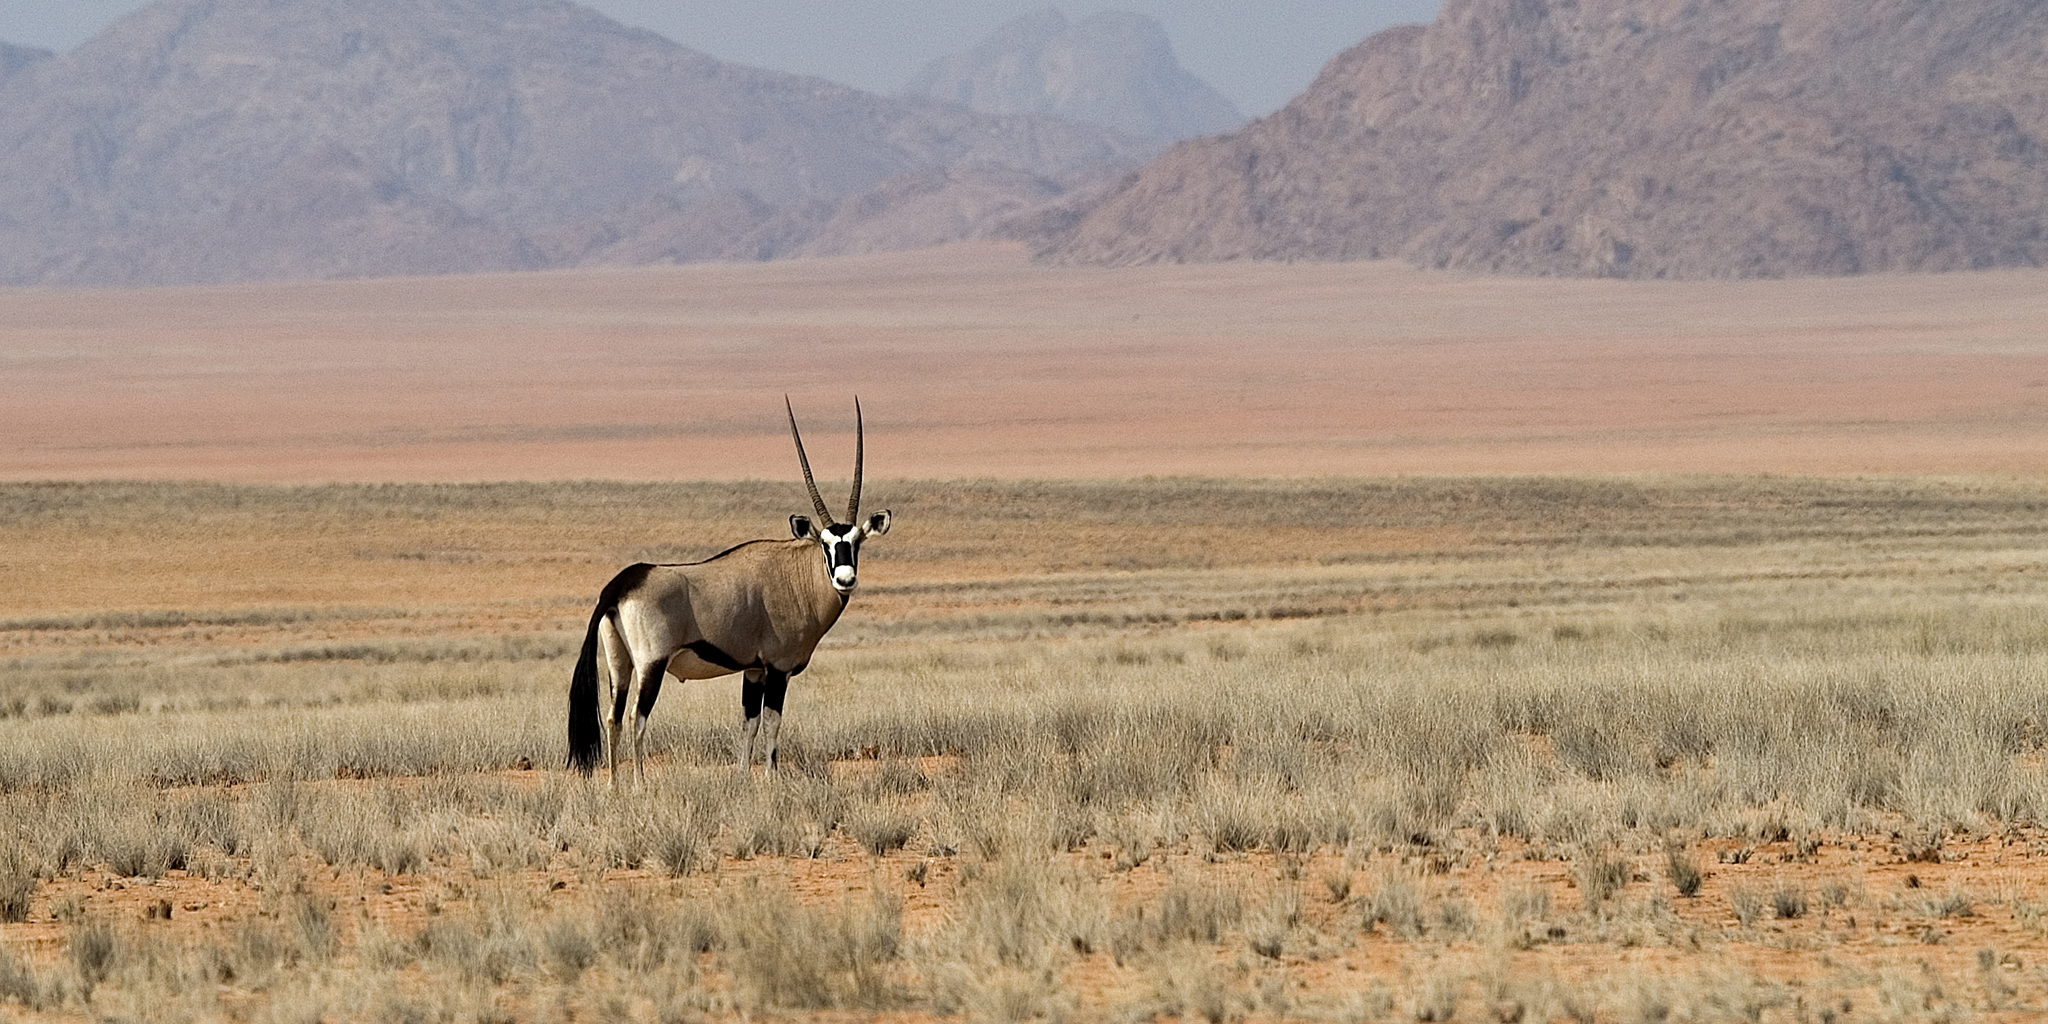 antelope in kunene river, namibia safari vacations